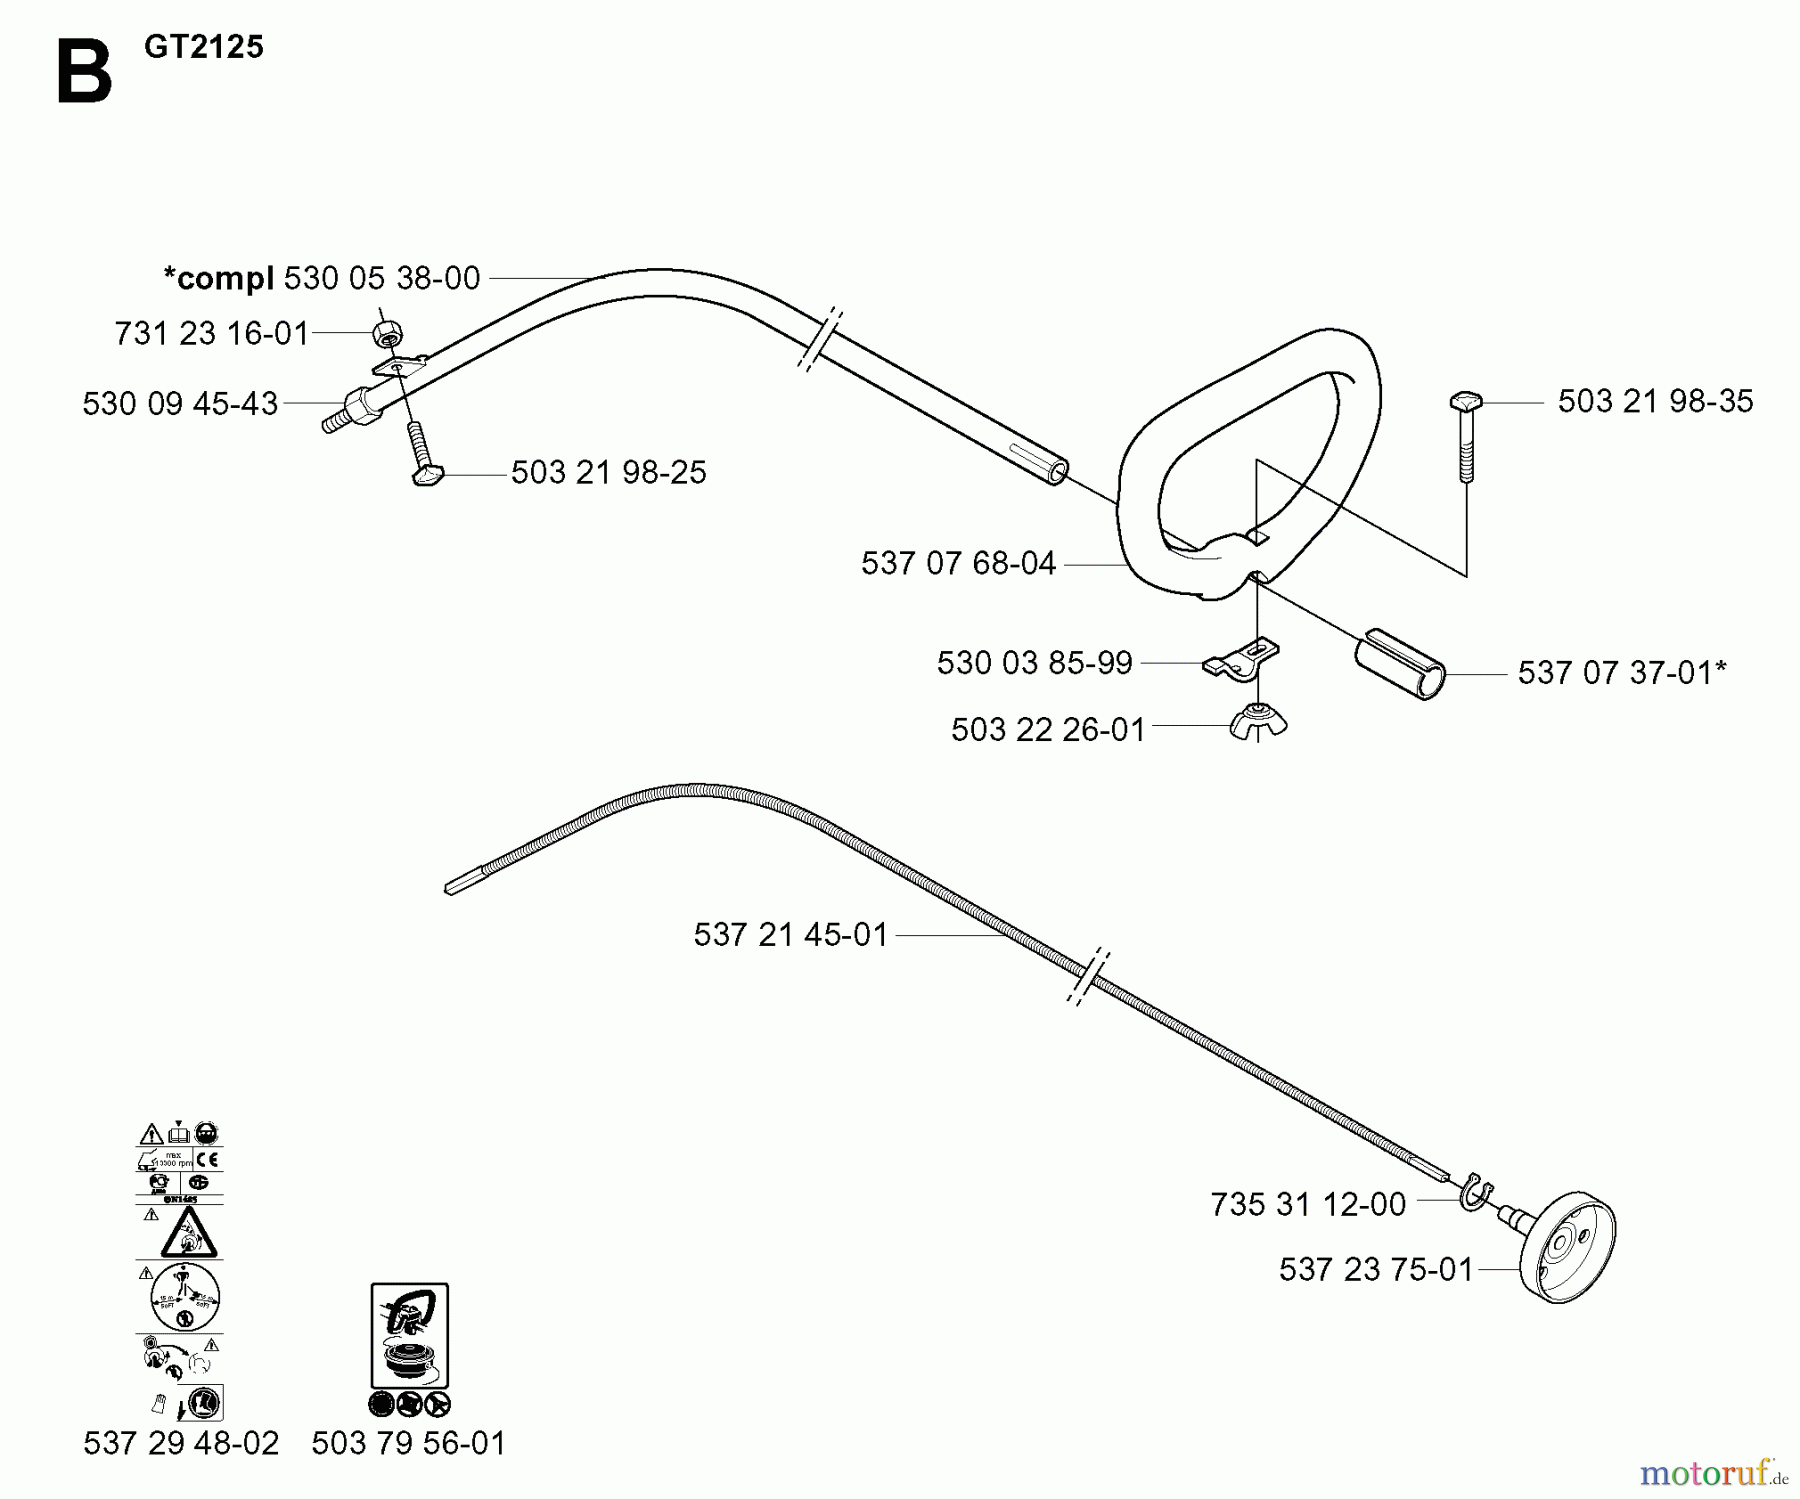  Jonsered Motorsensen, Trimmer GC2125C - Jonsered String/Brush Trimmer (2005-01) SHAFT HANDLE #1